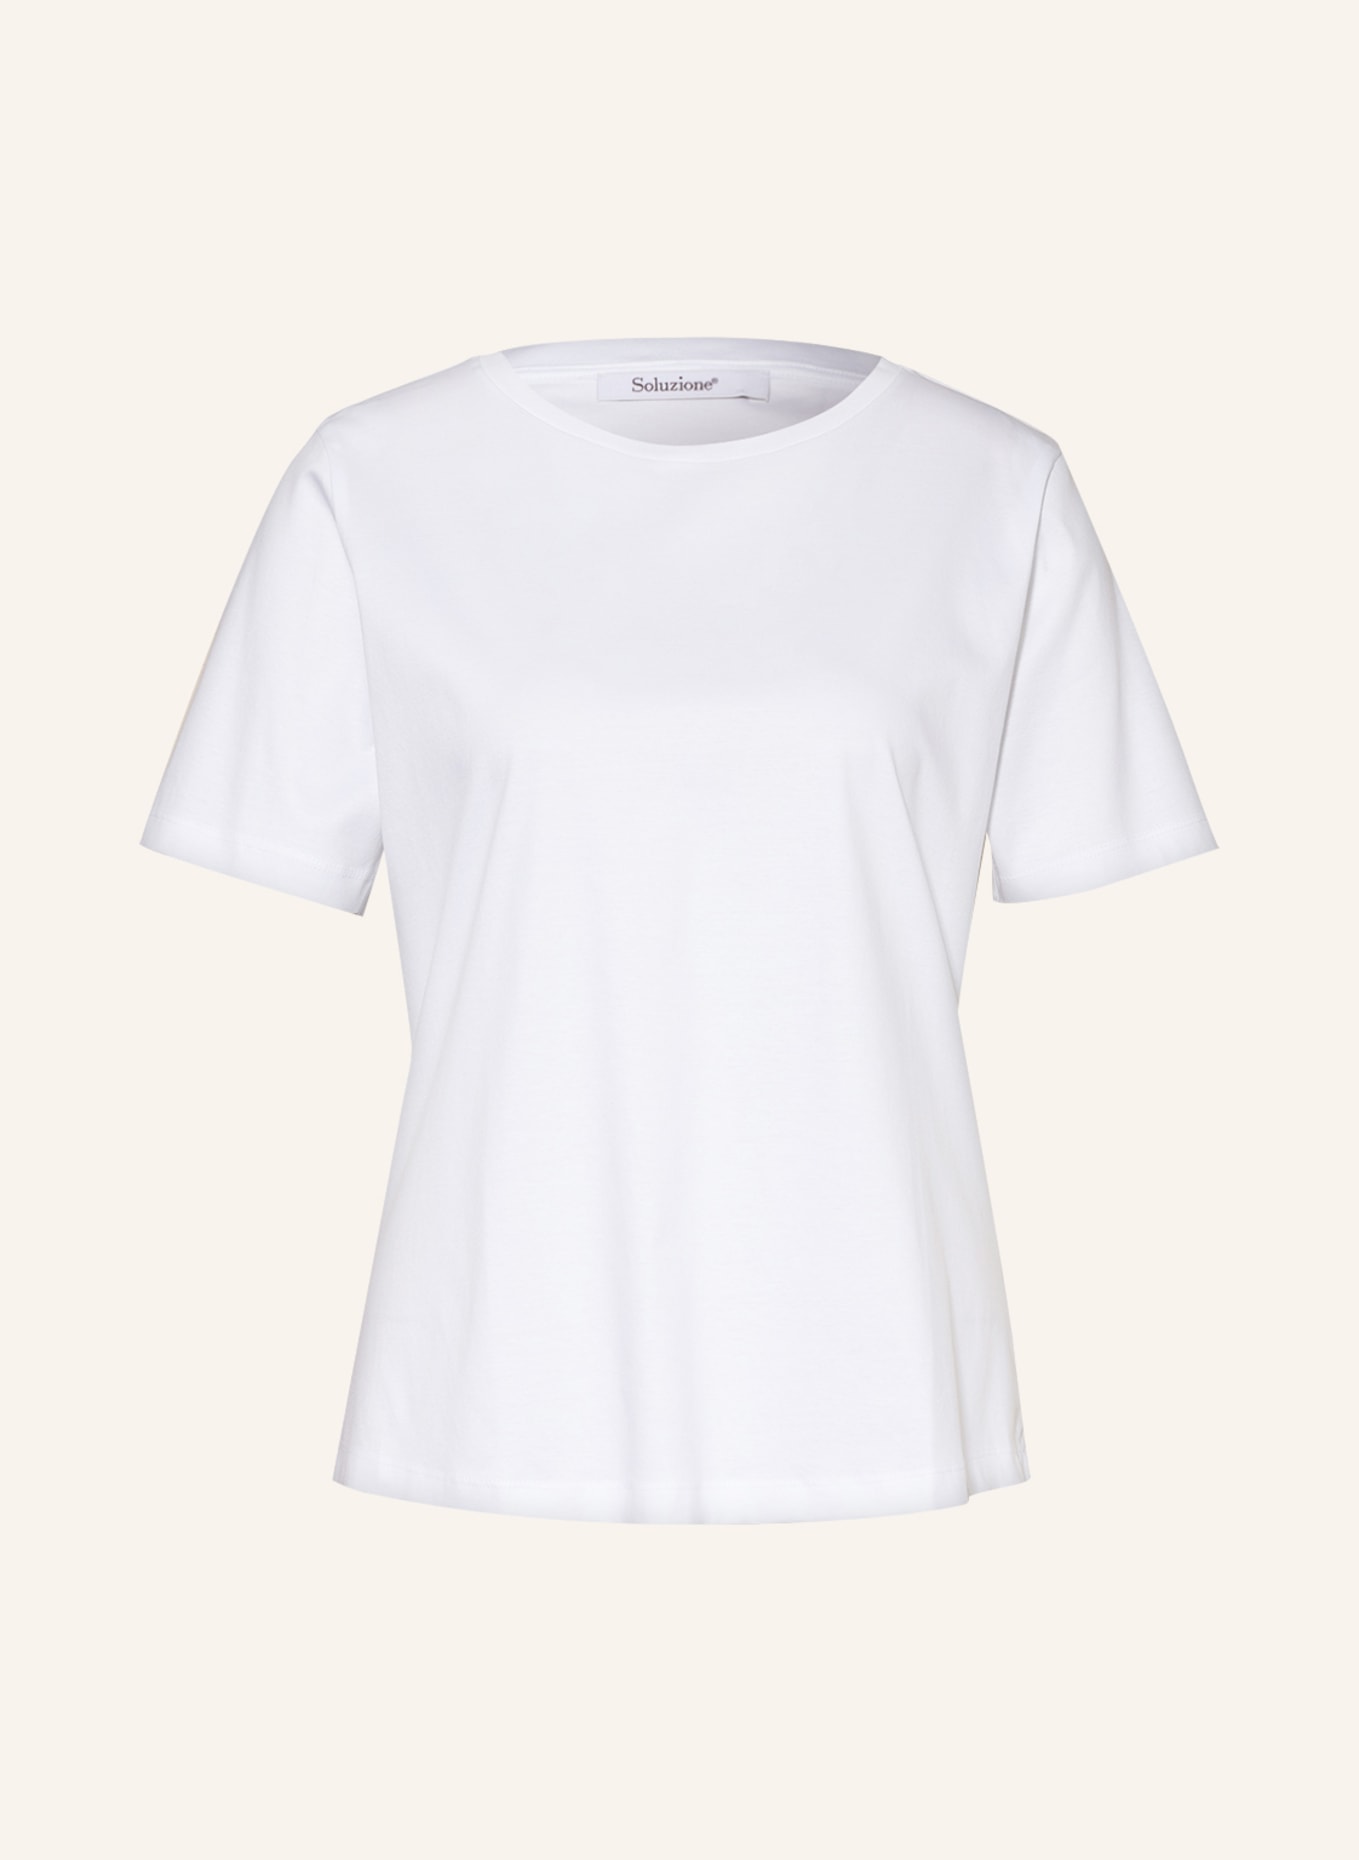 Soluzione T-shirt, Color: WHITE (Image 1)